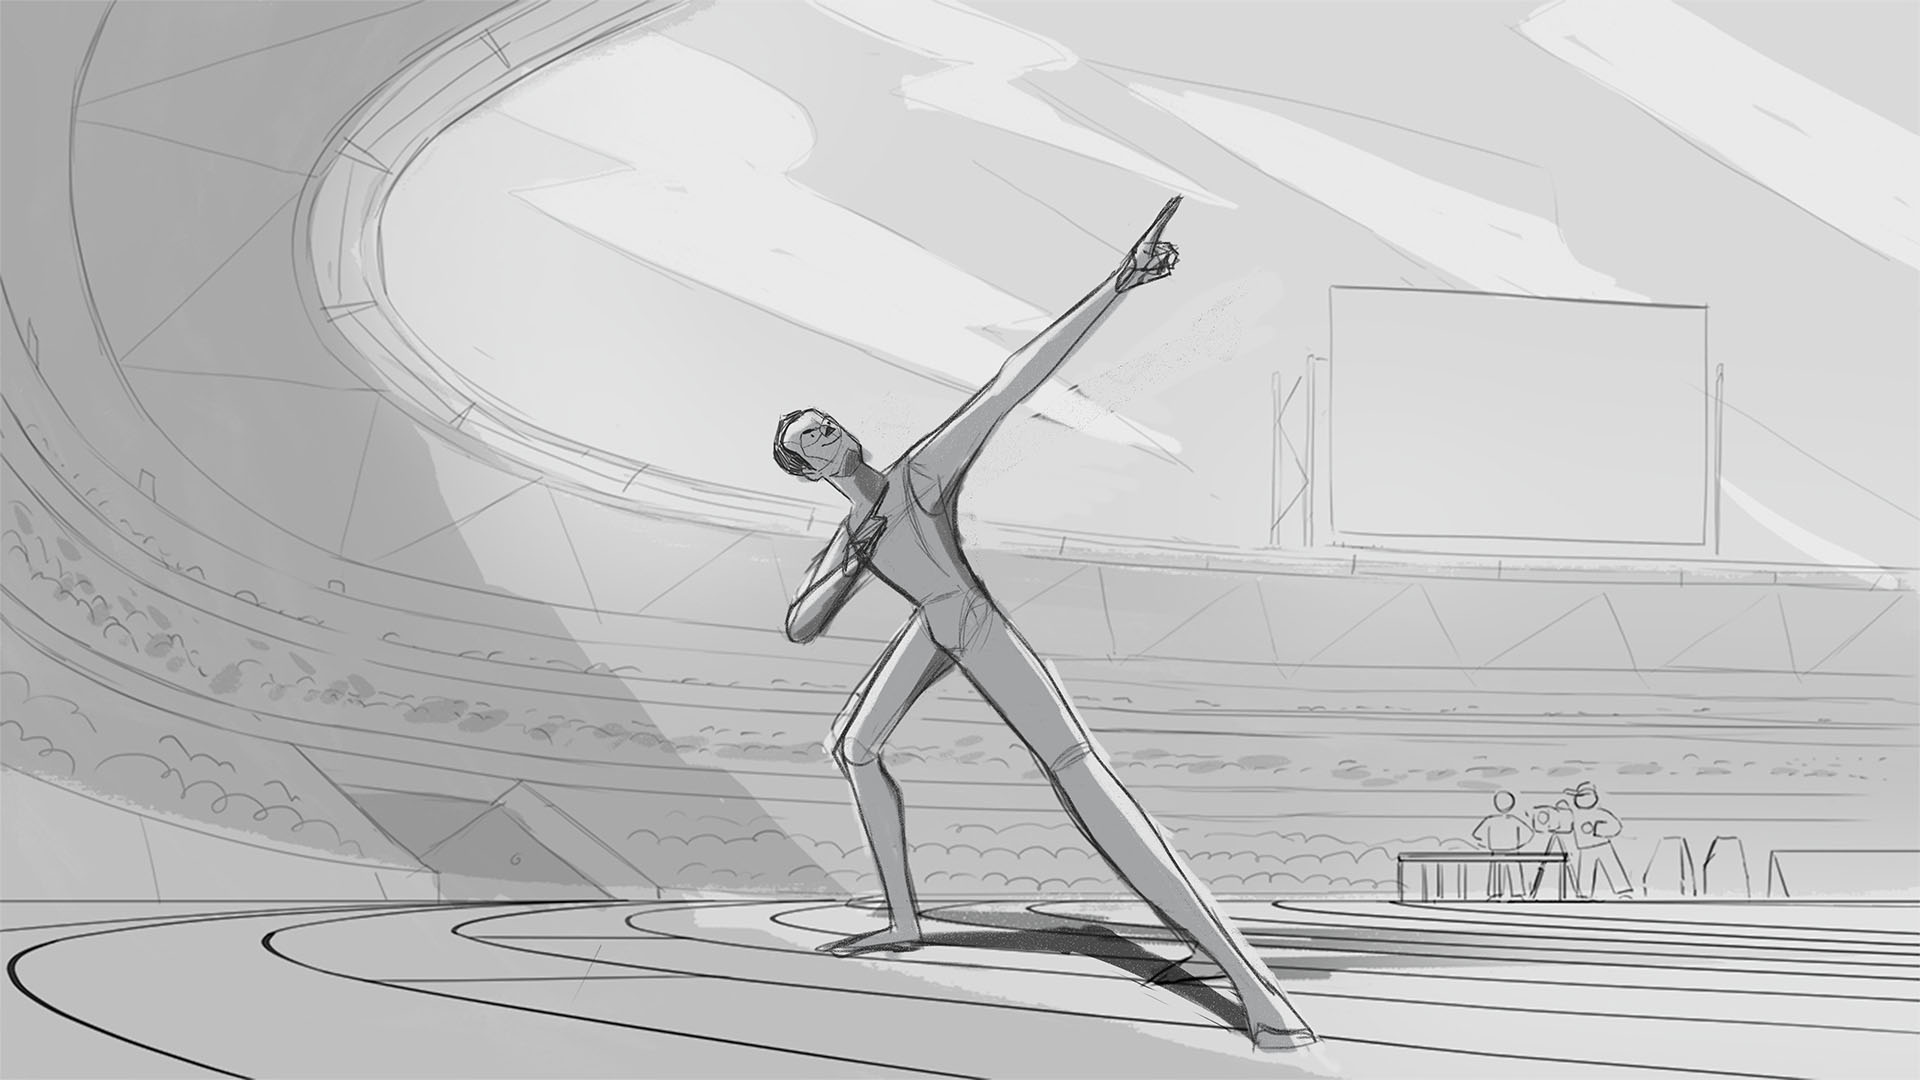 Usain Bolt pose sketch